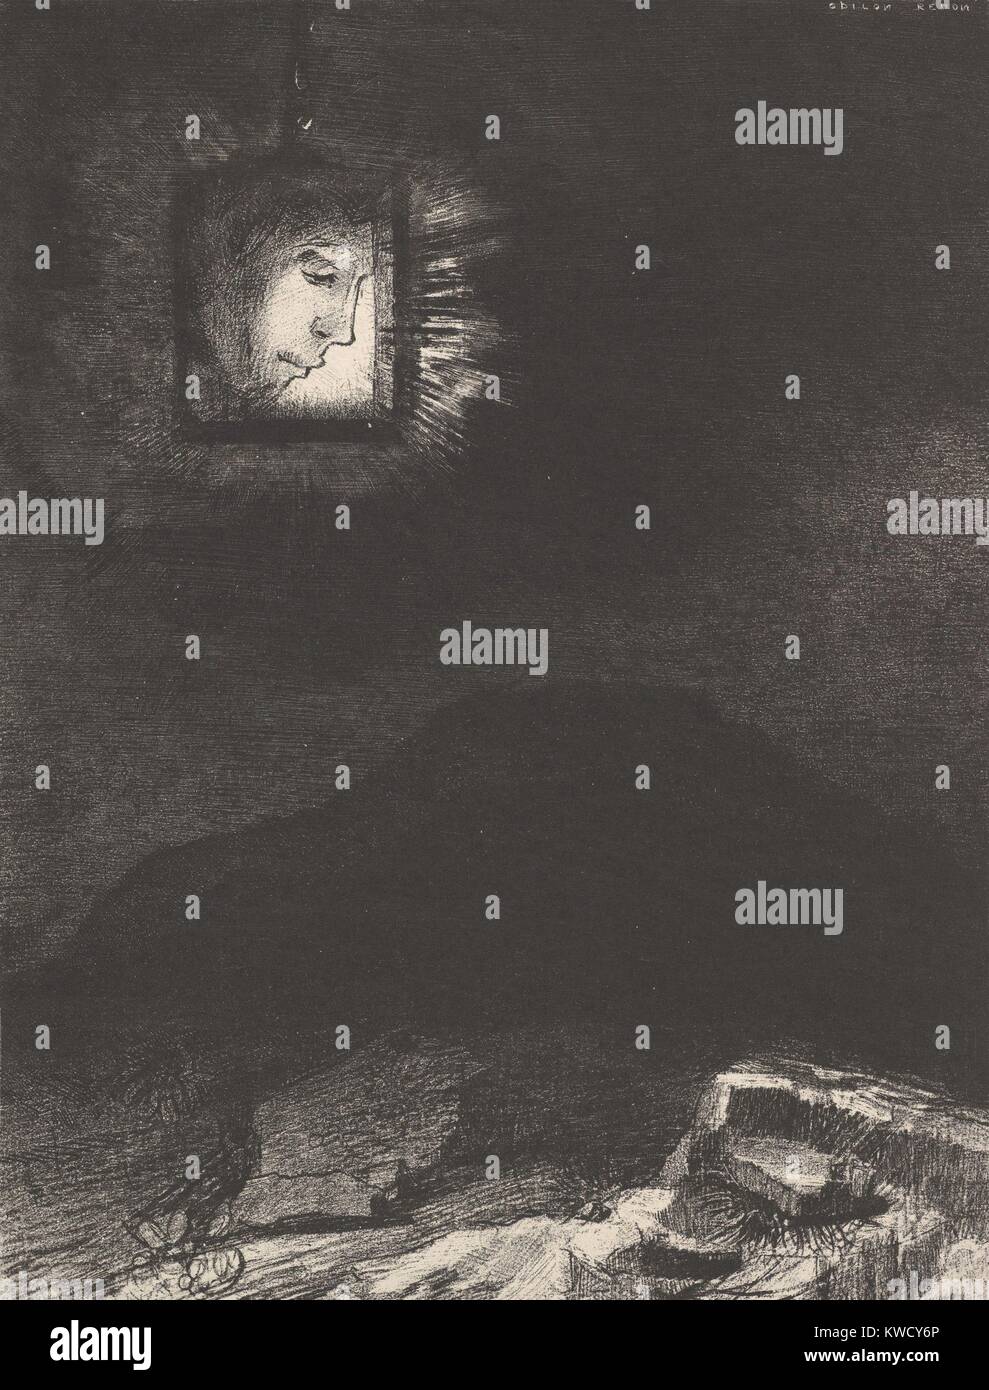 El vago atisbo de una cabeza suspendida en el espacio, por Odilon Redon, 1891, impresión simbolista francesa. Este imaginativo litografía establece un perfil enmarcado retrato arriba un oscuro paisaje (BSLOC 2017 5 130) Foto de stock